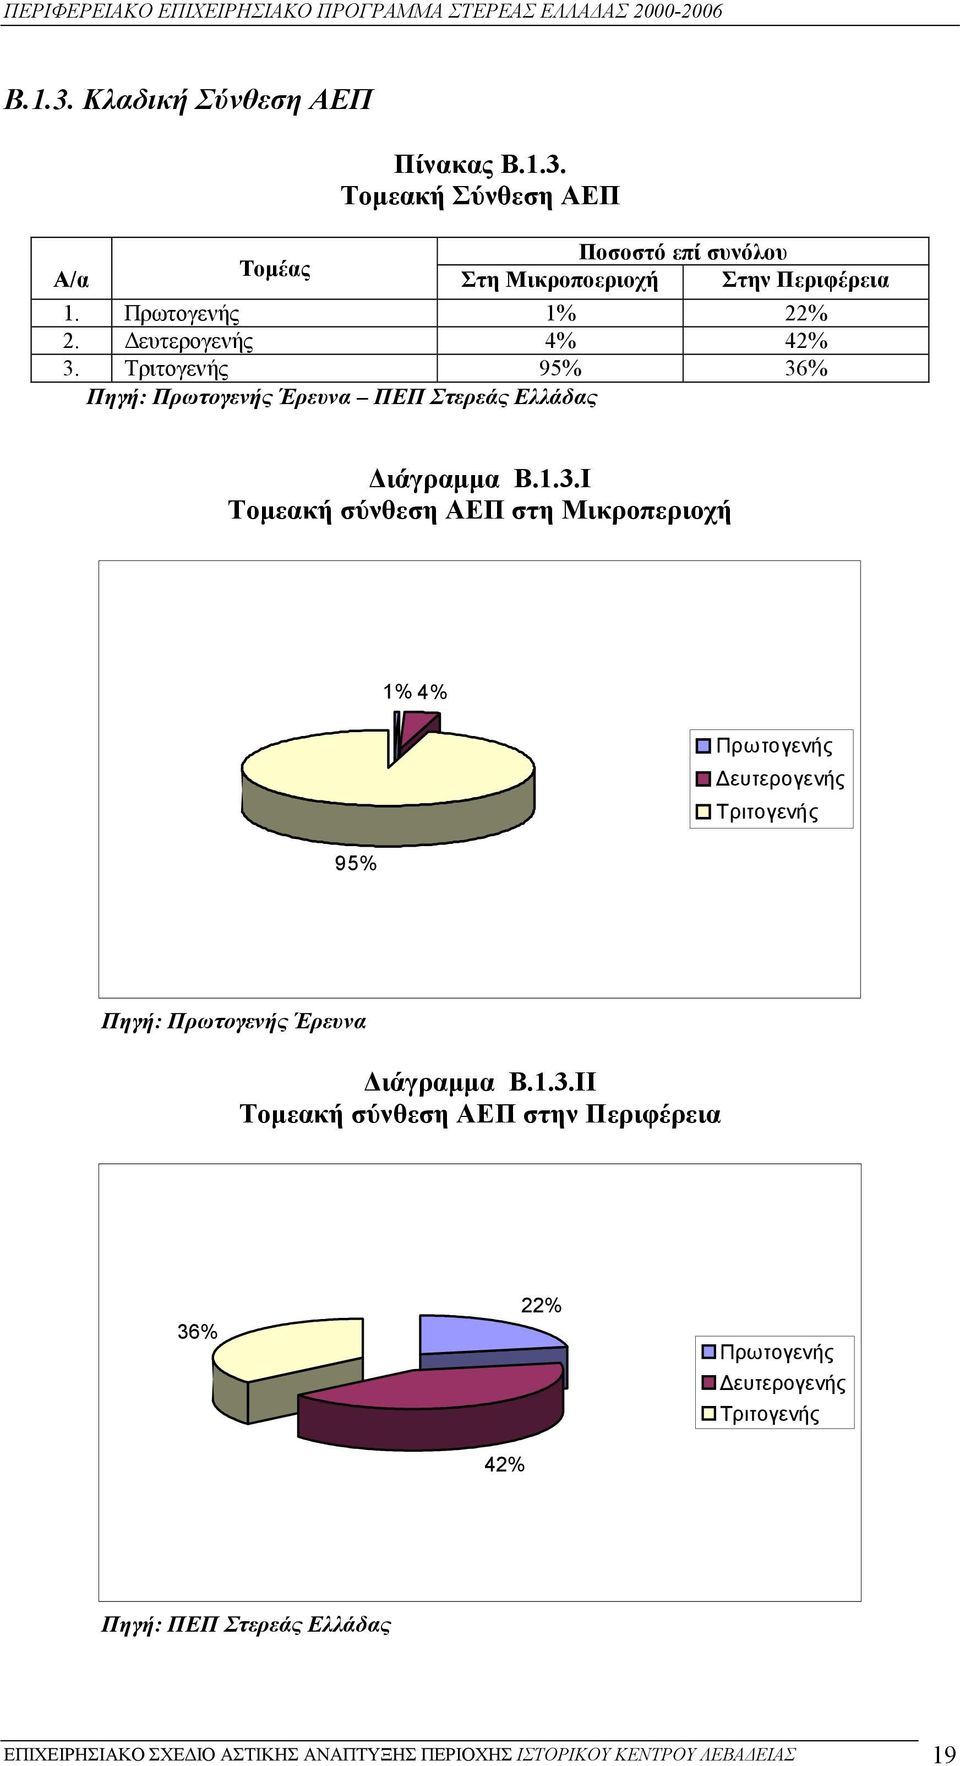 Τριτογενής 95% 36% Πηγή: Πρωτογενής Έρευνα ΠΕΠ Στερεάς Ελλάδας ιάγραµµα Β.1.3.I Τοµεακή σύνθεση ΑΕΠ στη Μικροπεριοχή 1% 4% Πρωτογενής ευτερογενής Τριτογενής 95% Πηγή: Πρωτογενής Έρευνα ιάγραµµα Β.